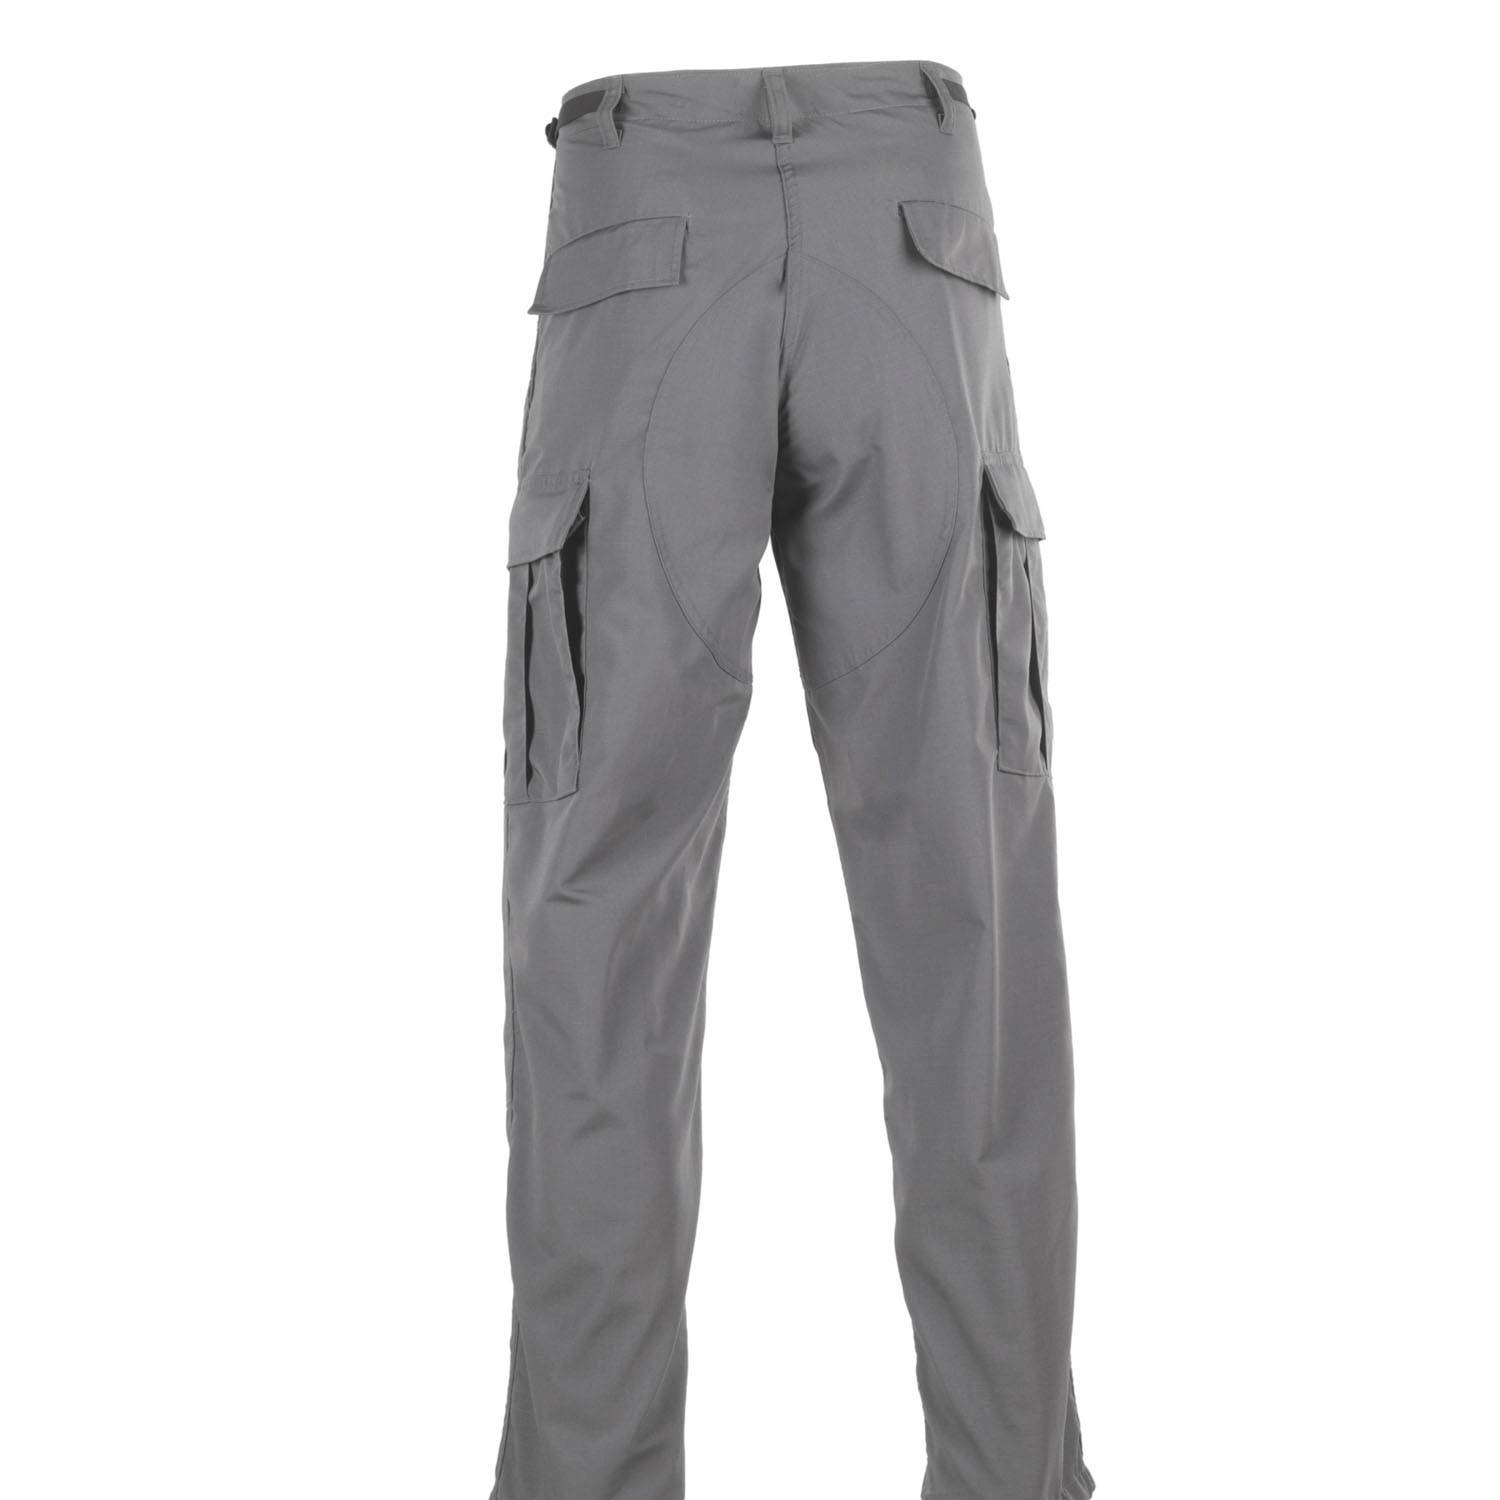 Galls Ripstop BDU Pants | Men's BDU Tactical Pants